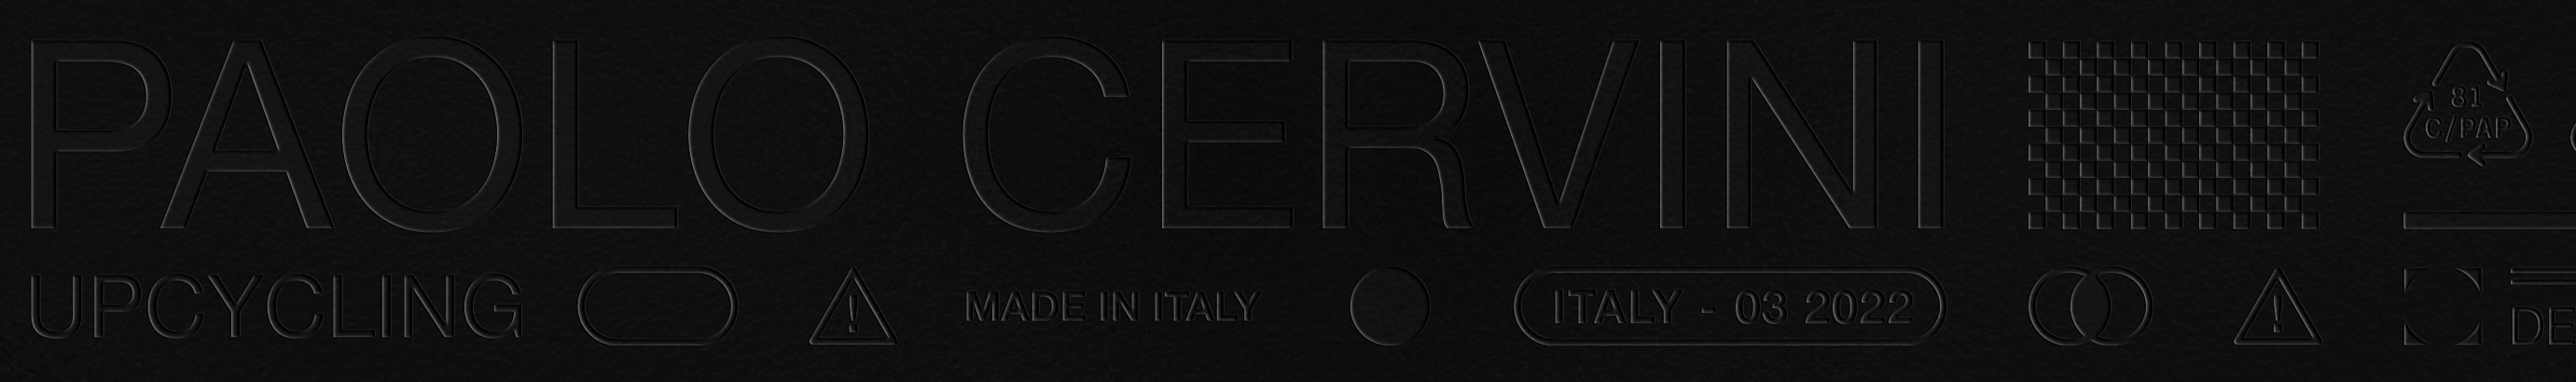 Paolo Cervini's profile banner